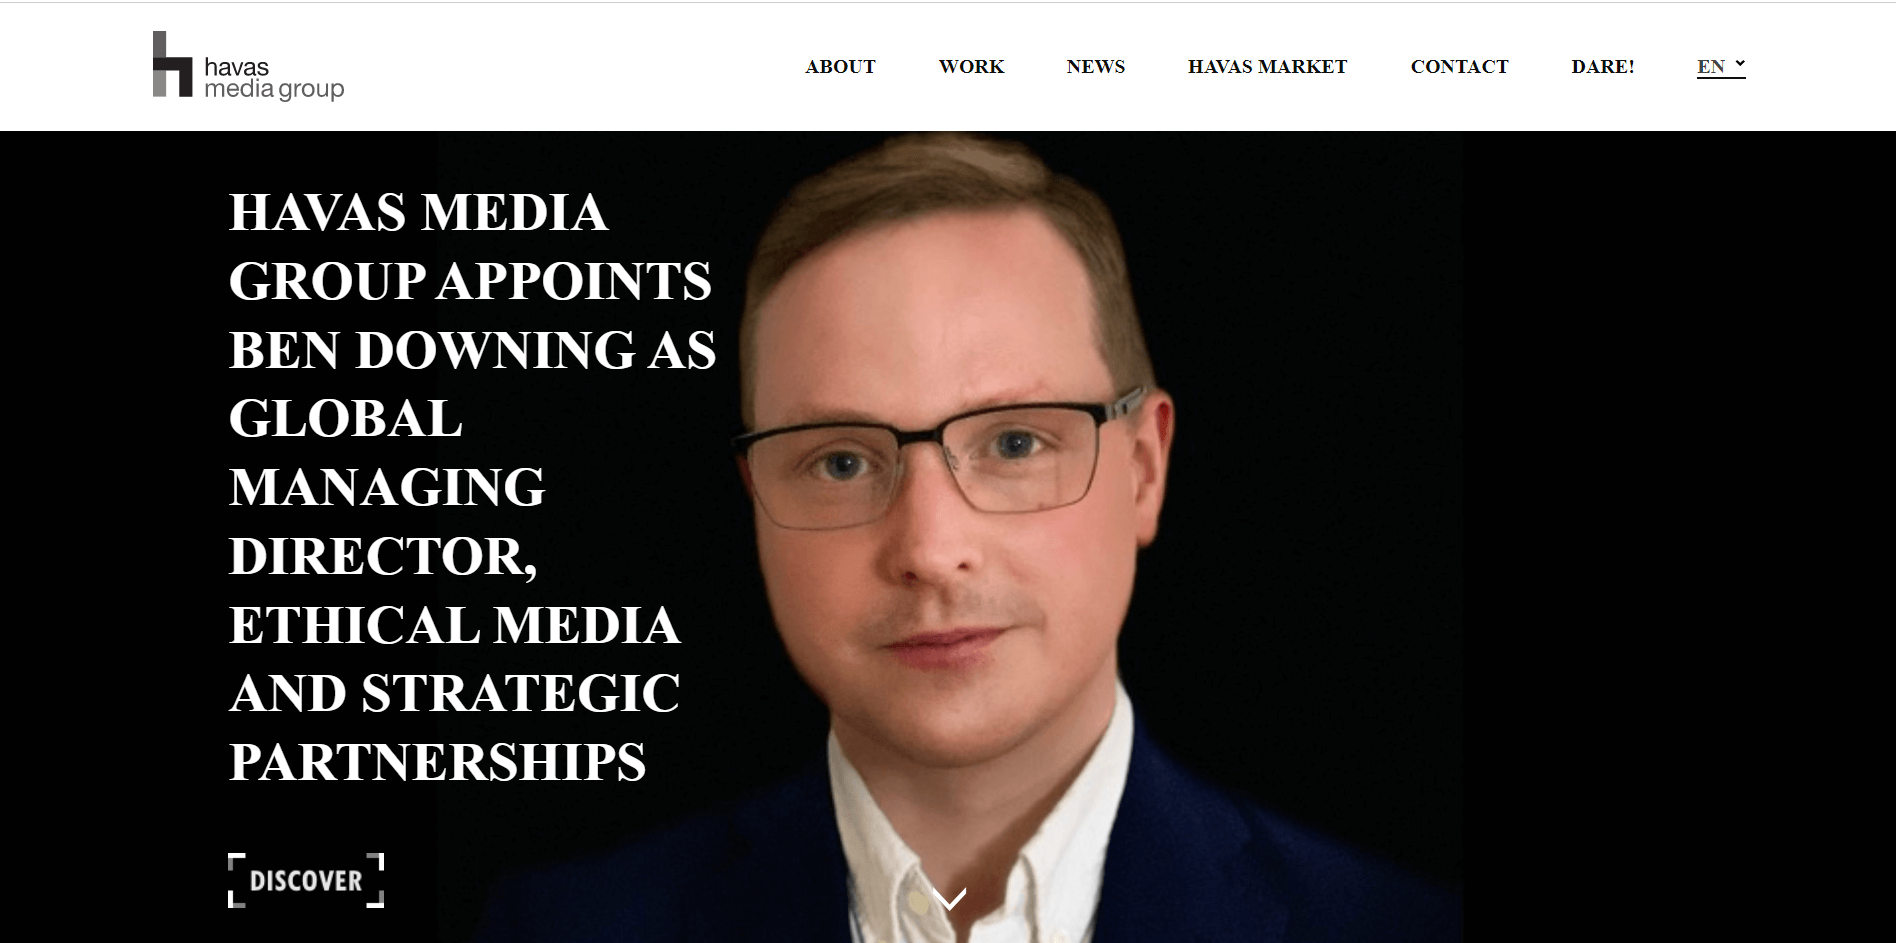 Havas Media Group